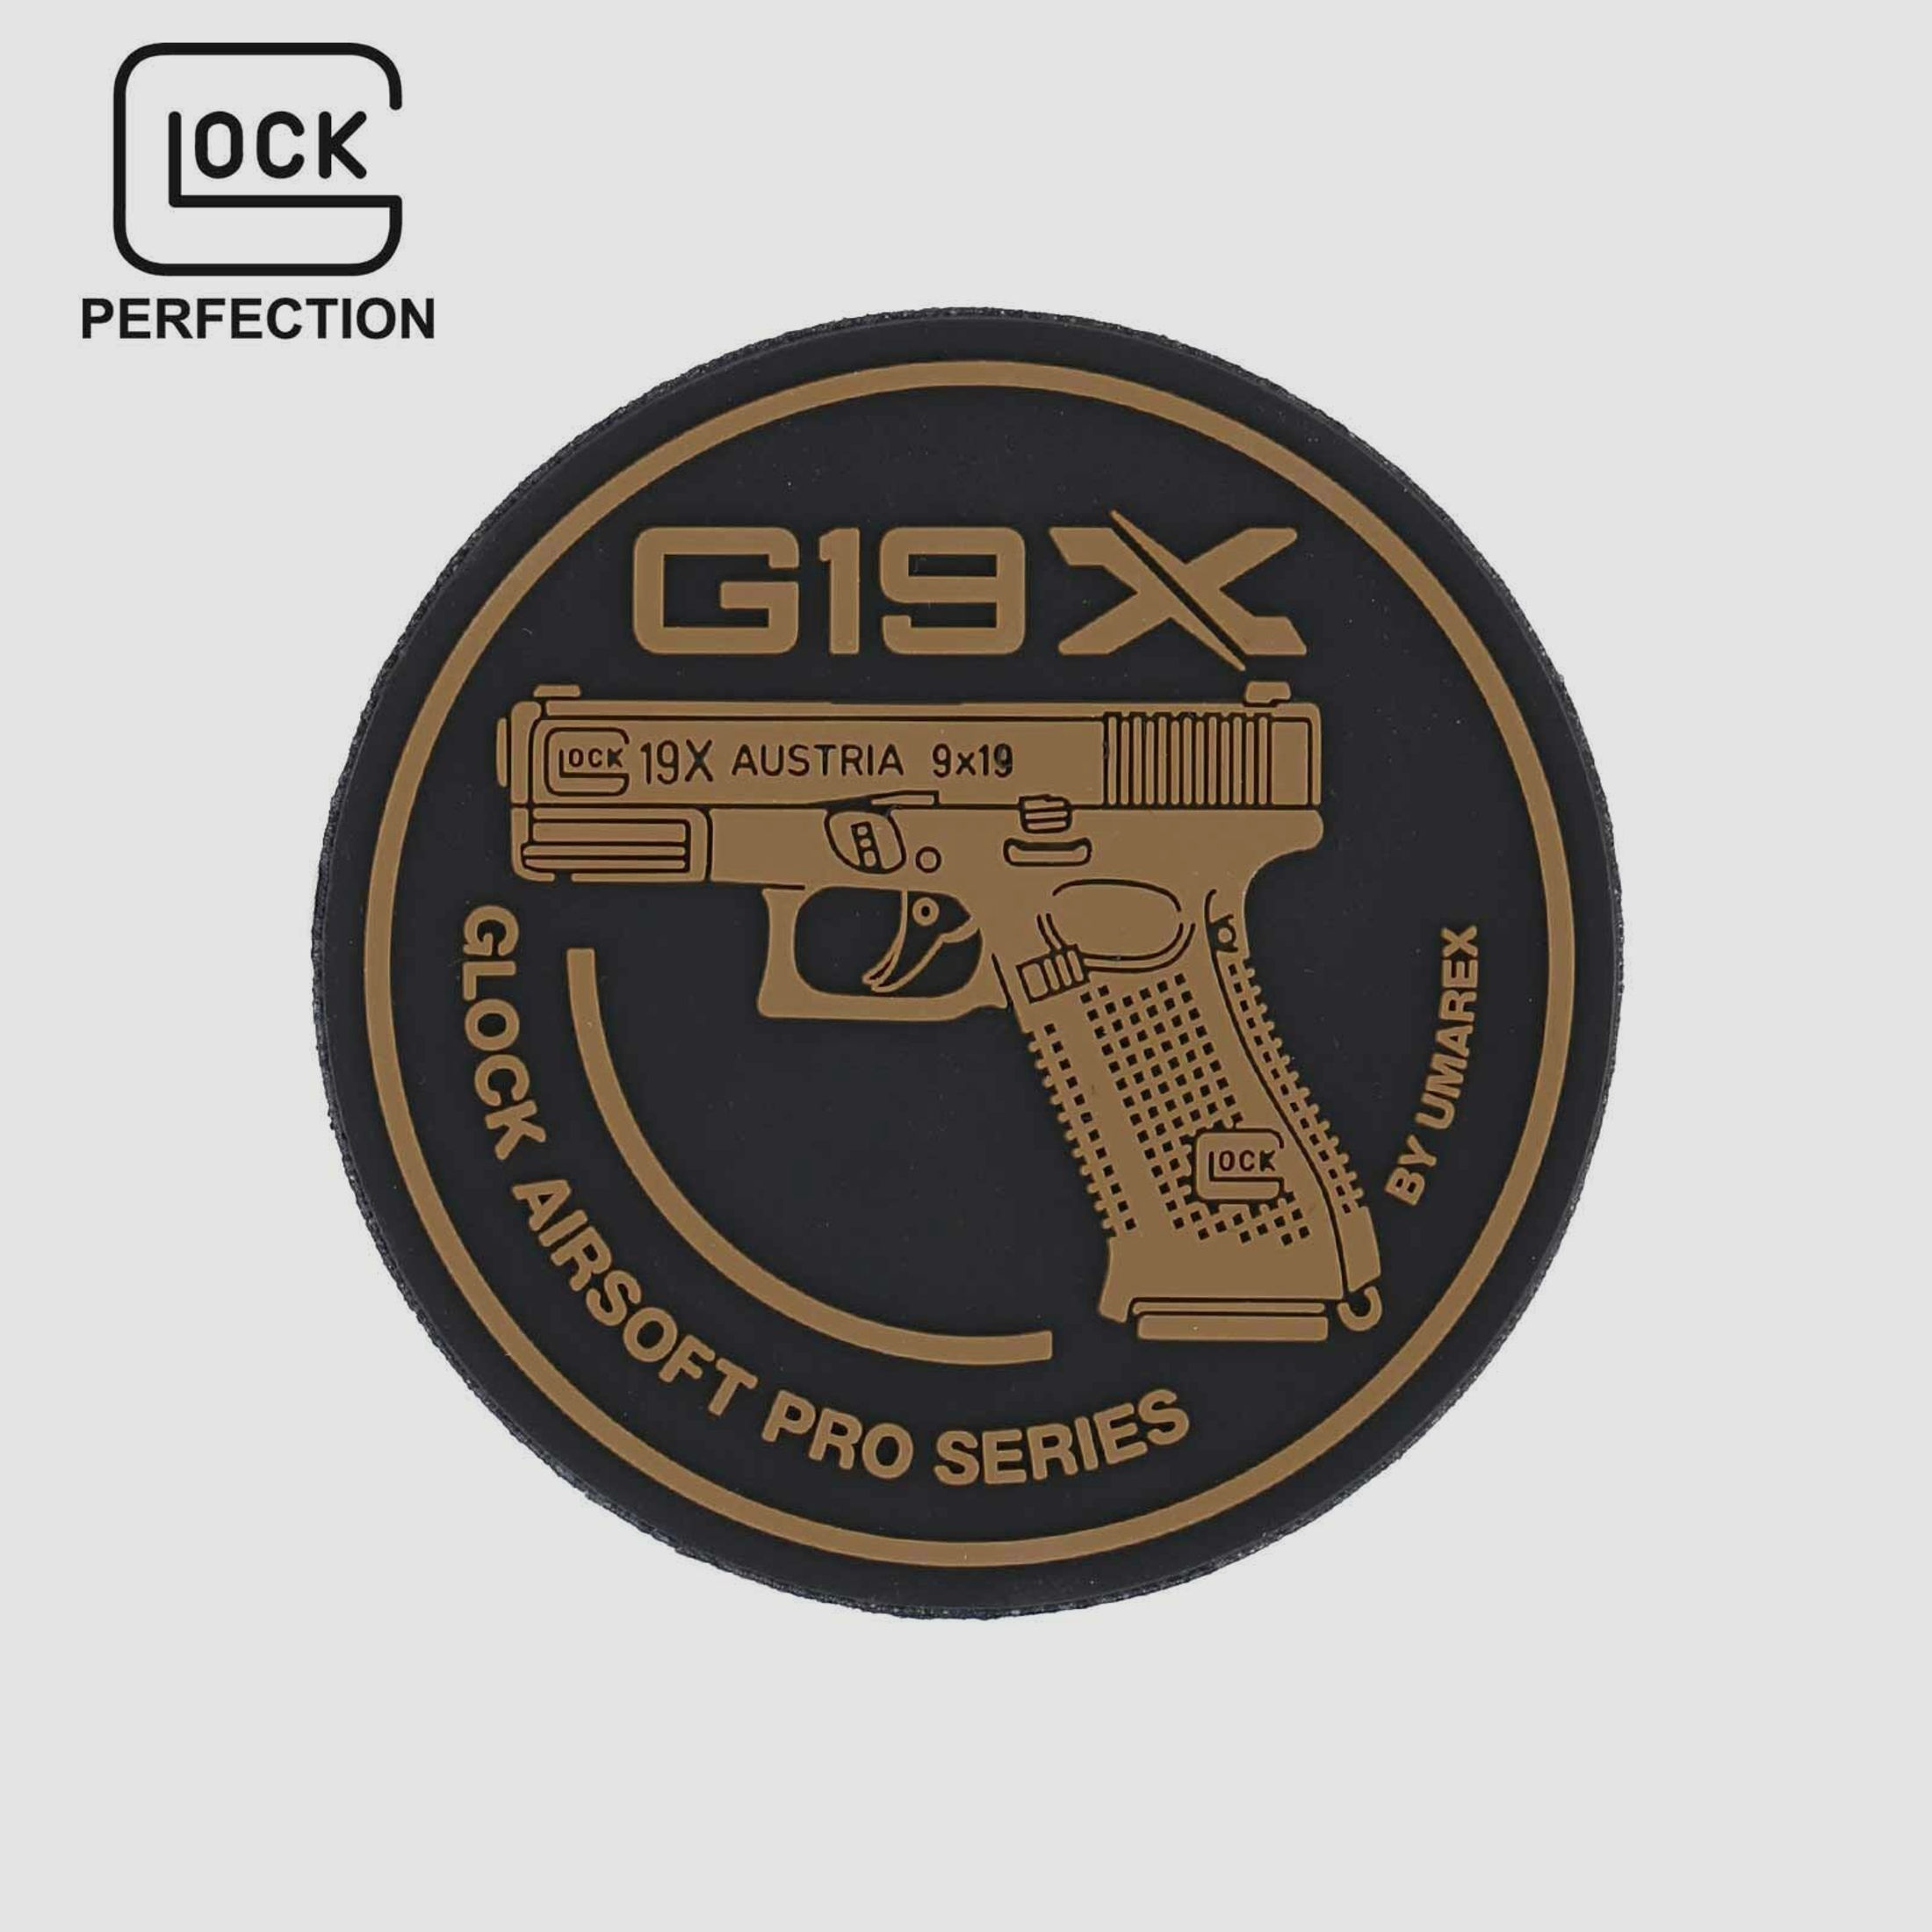 Glock Rubberpatch 19X